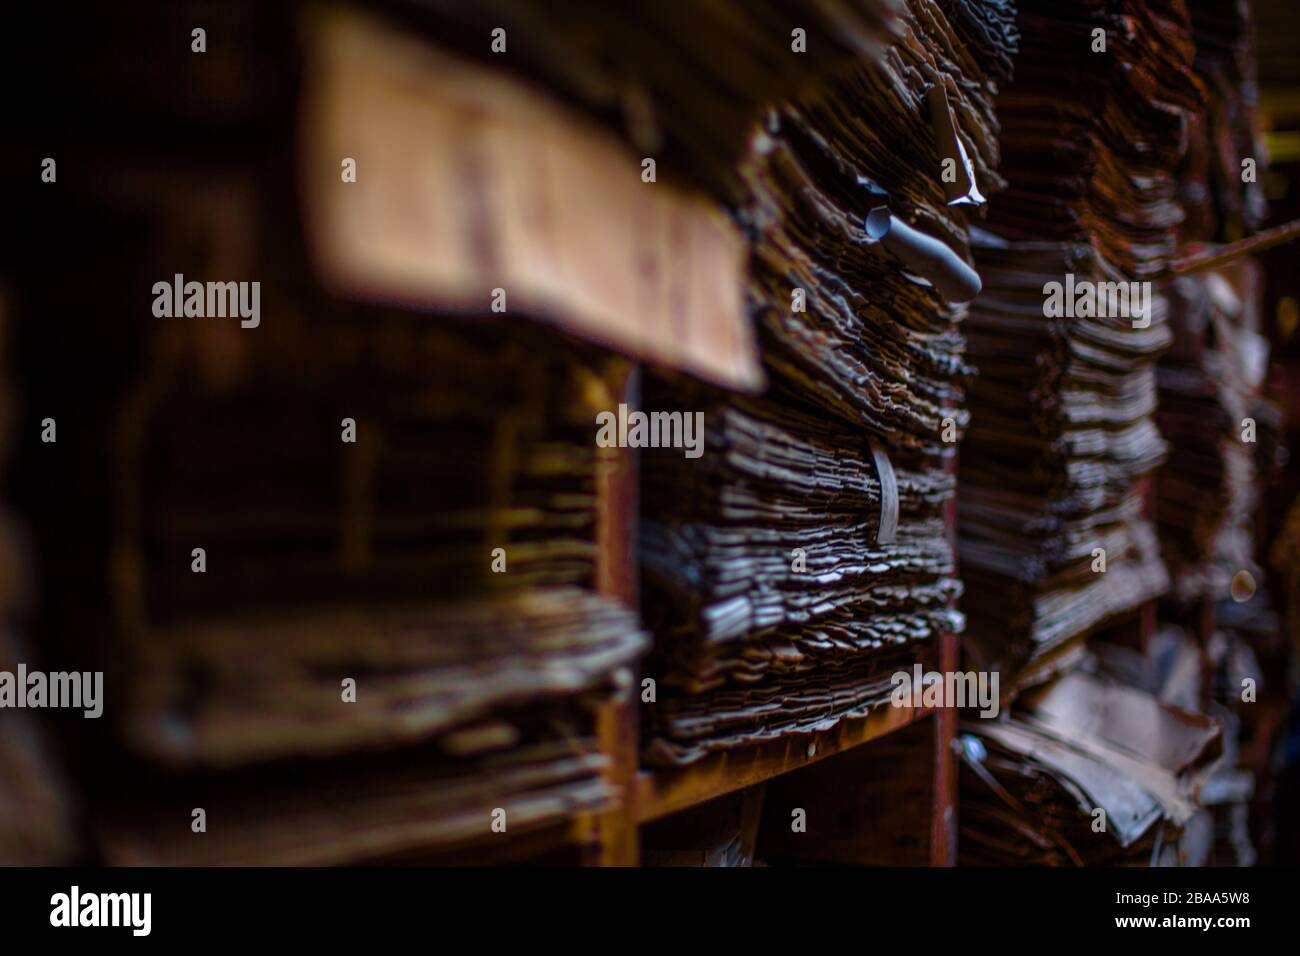 Un enorme archivio di documenti si trova accatastato in una stanza polverosa dimenticata, Venezia Italia. Foto Stock